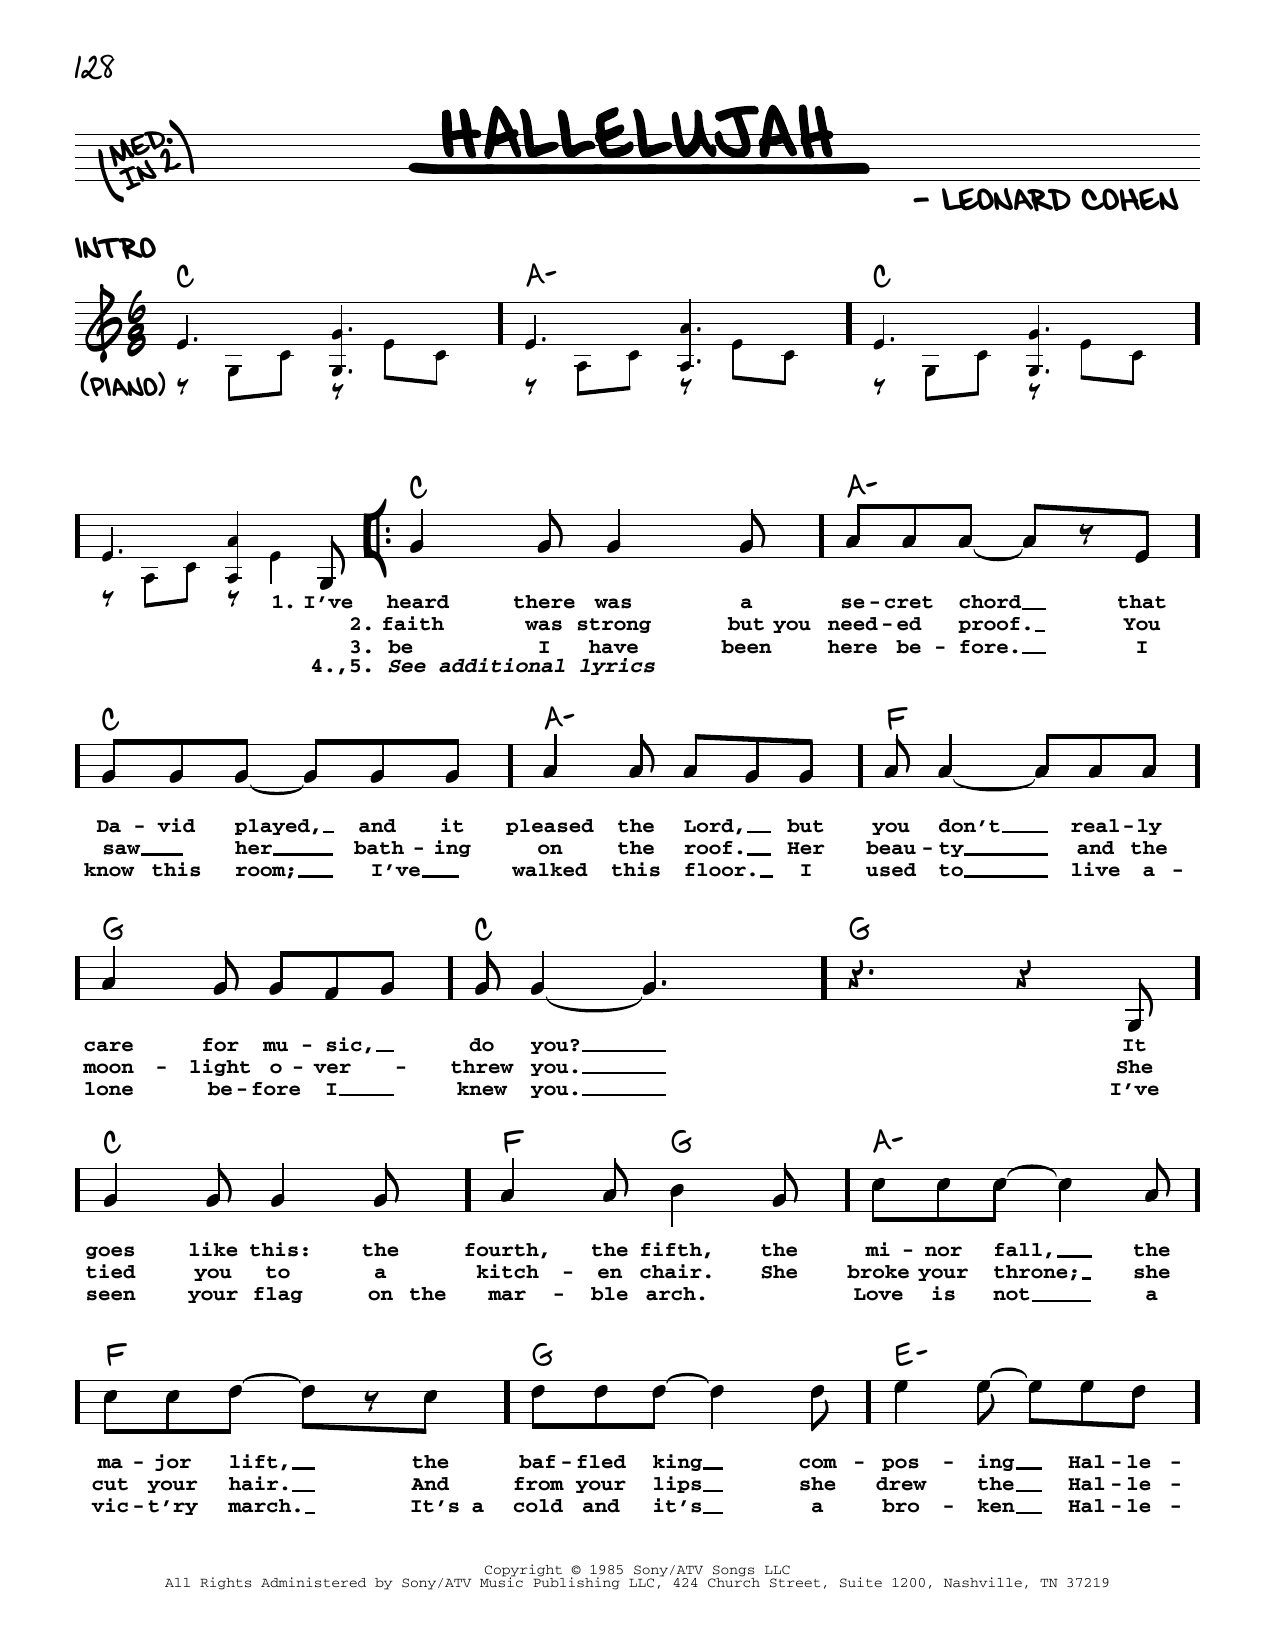 Download Leonard Cohen Hallelujah Sheet Music